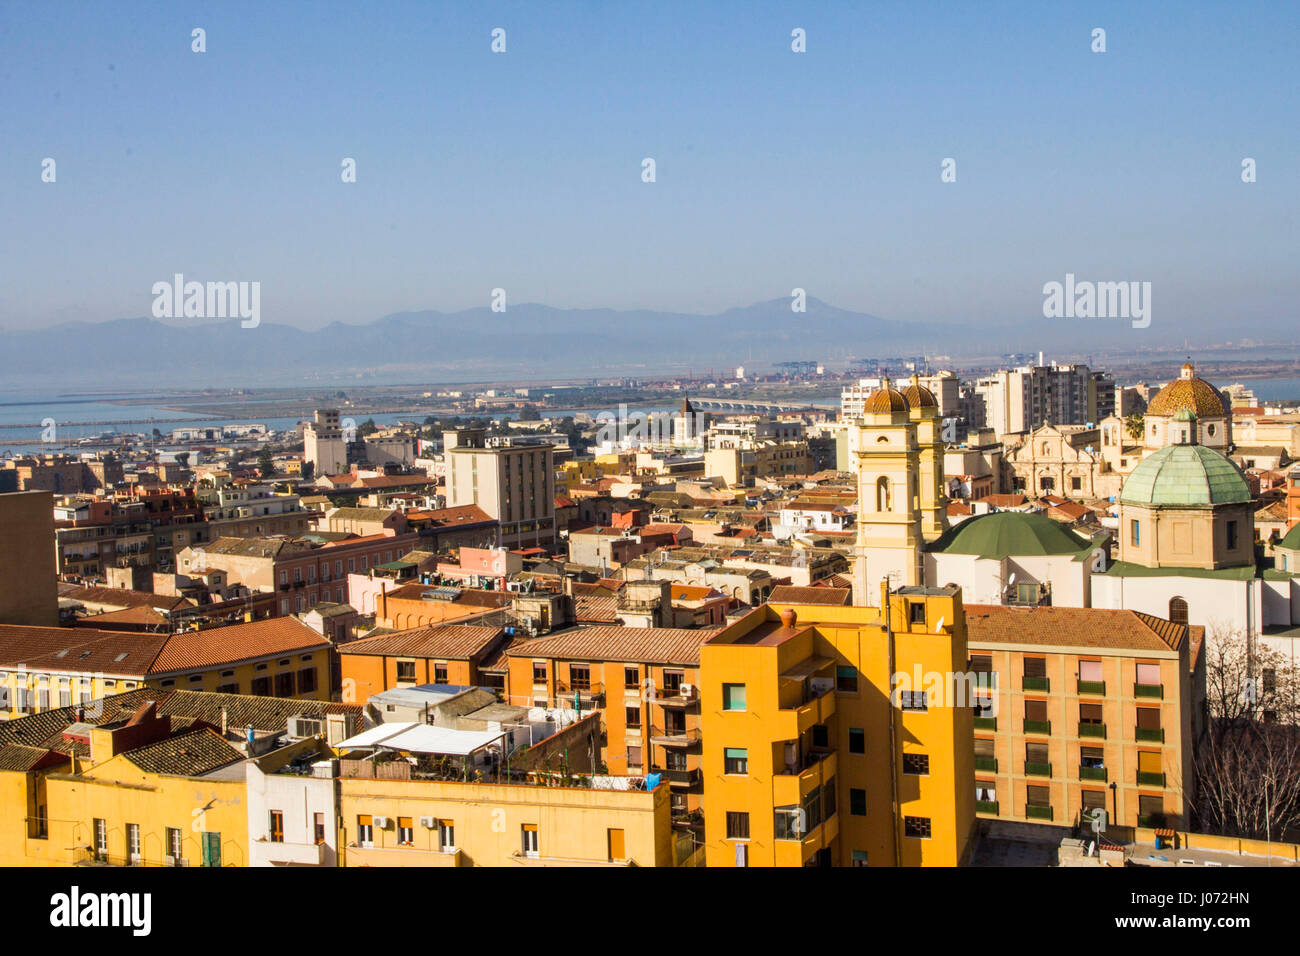 Eine Übersicht von Cagliari aus der Bastion Saint Remy.  Cagliari, Sardinien, Italien. Stockfoto